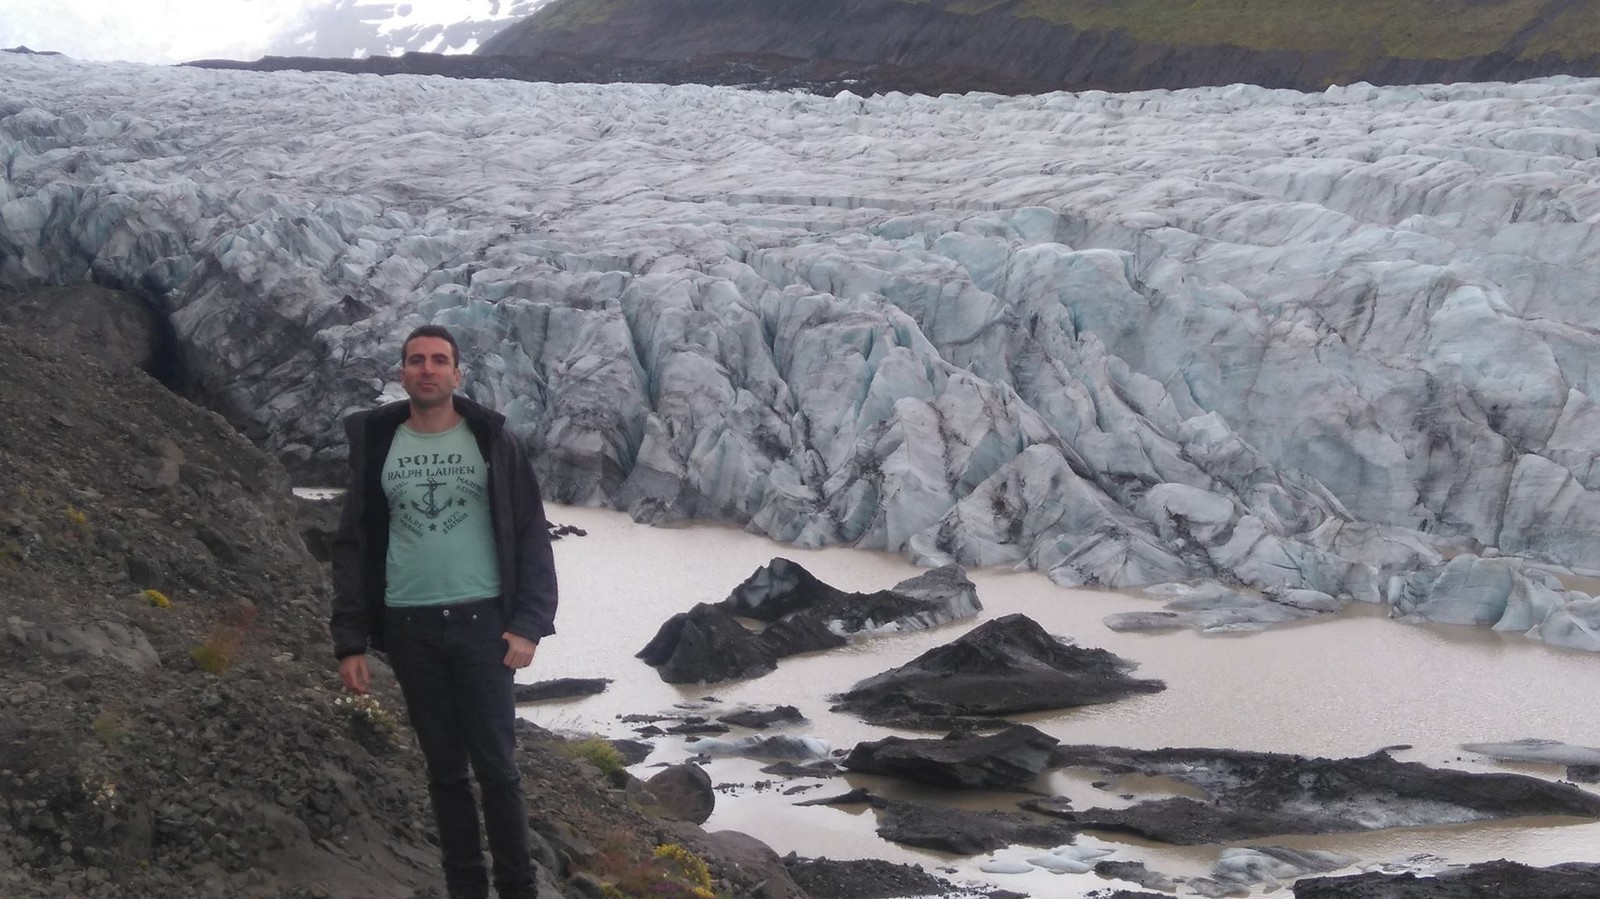 Svinafollsjokull glacier